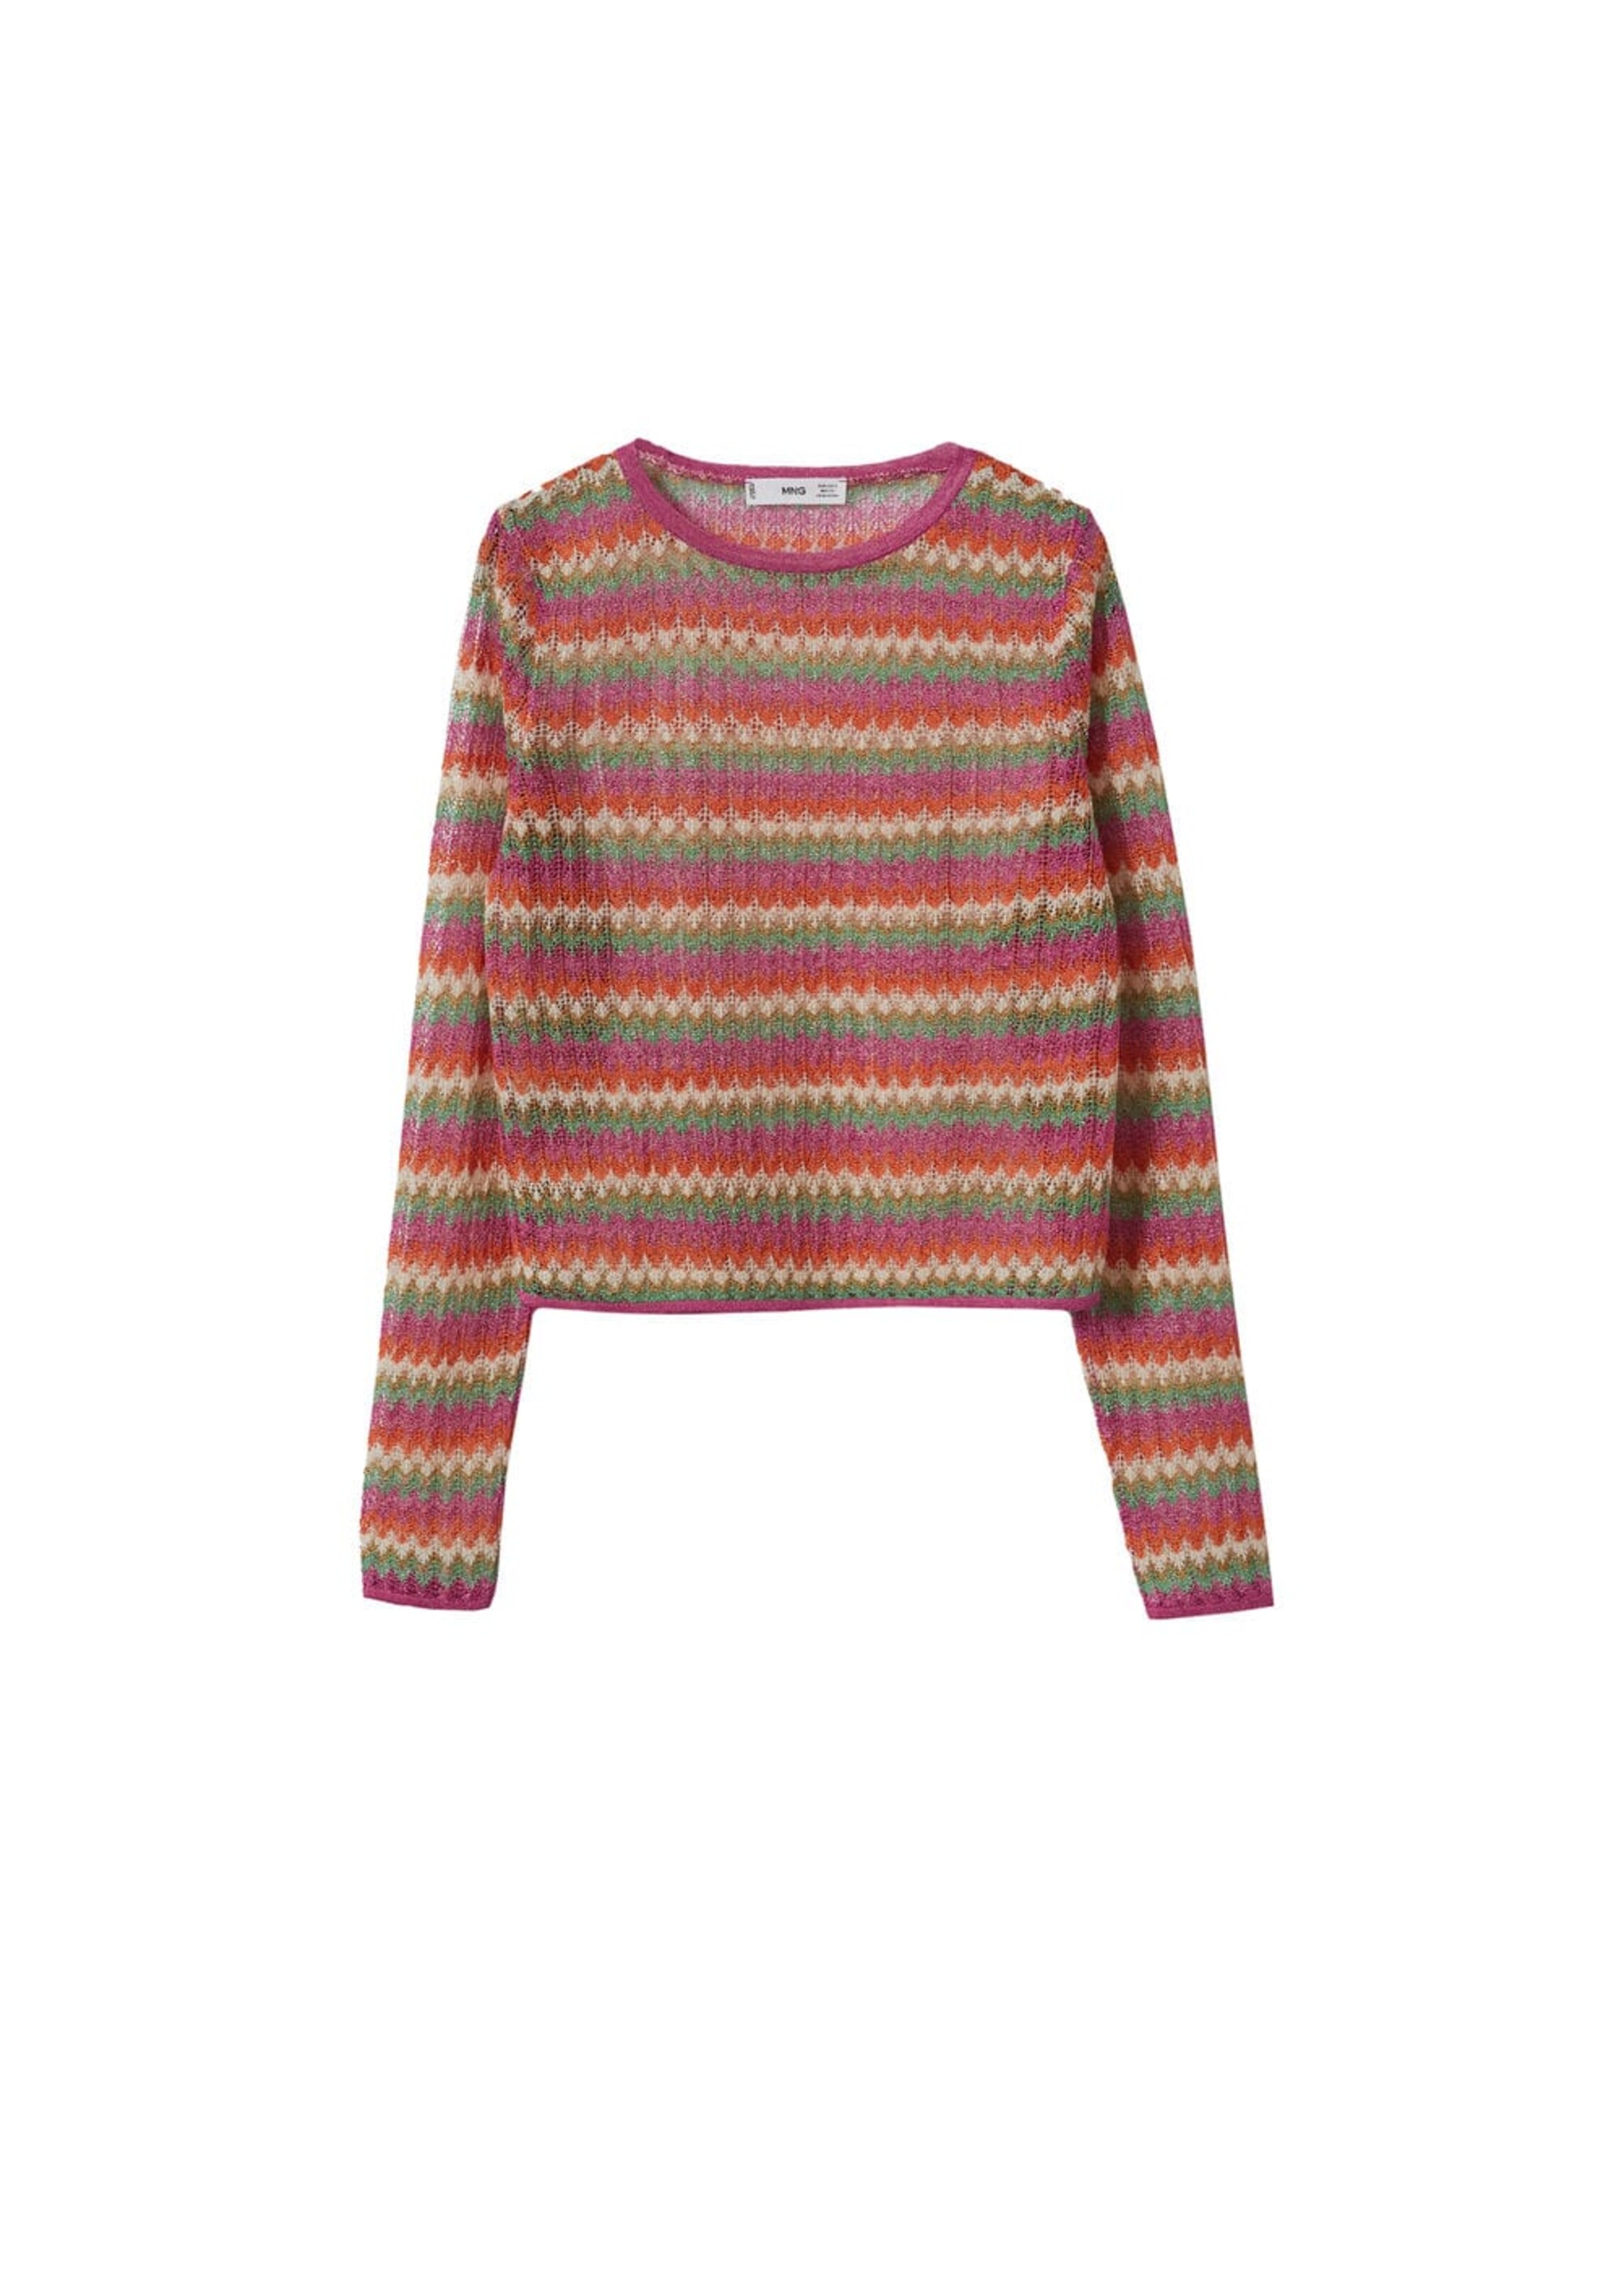 DAMEN Pullovers & Sweatshirts Pullover Stricken Mango Pullover Beige/Rot M Rabatt 68 % 